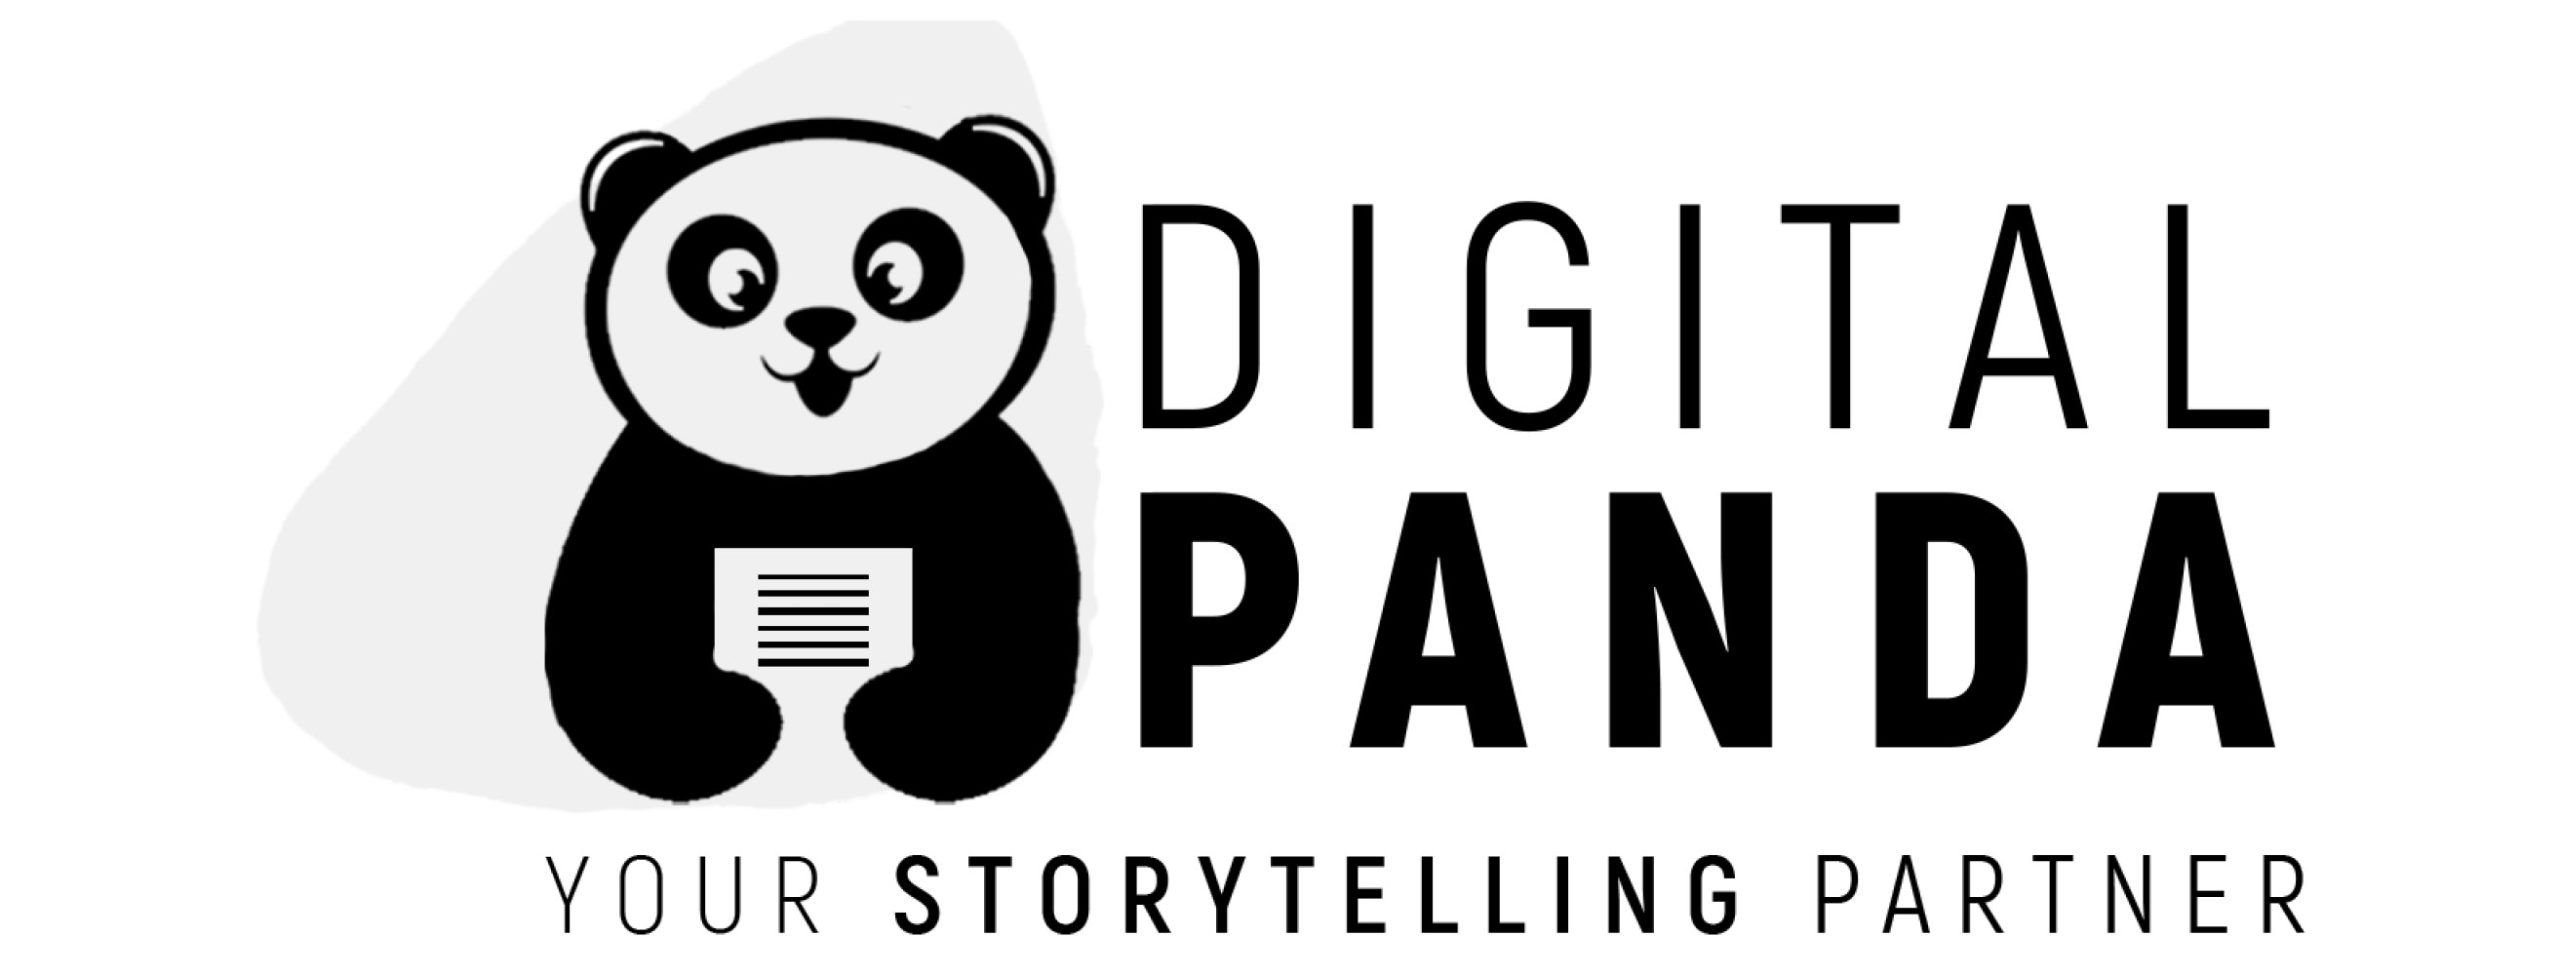 Digital Panda